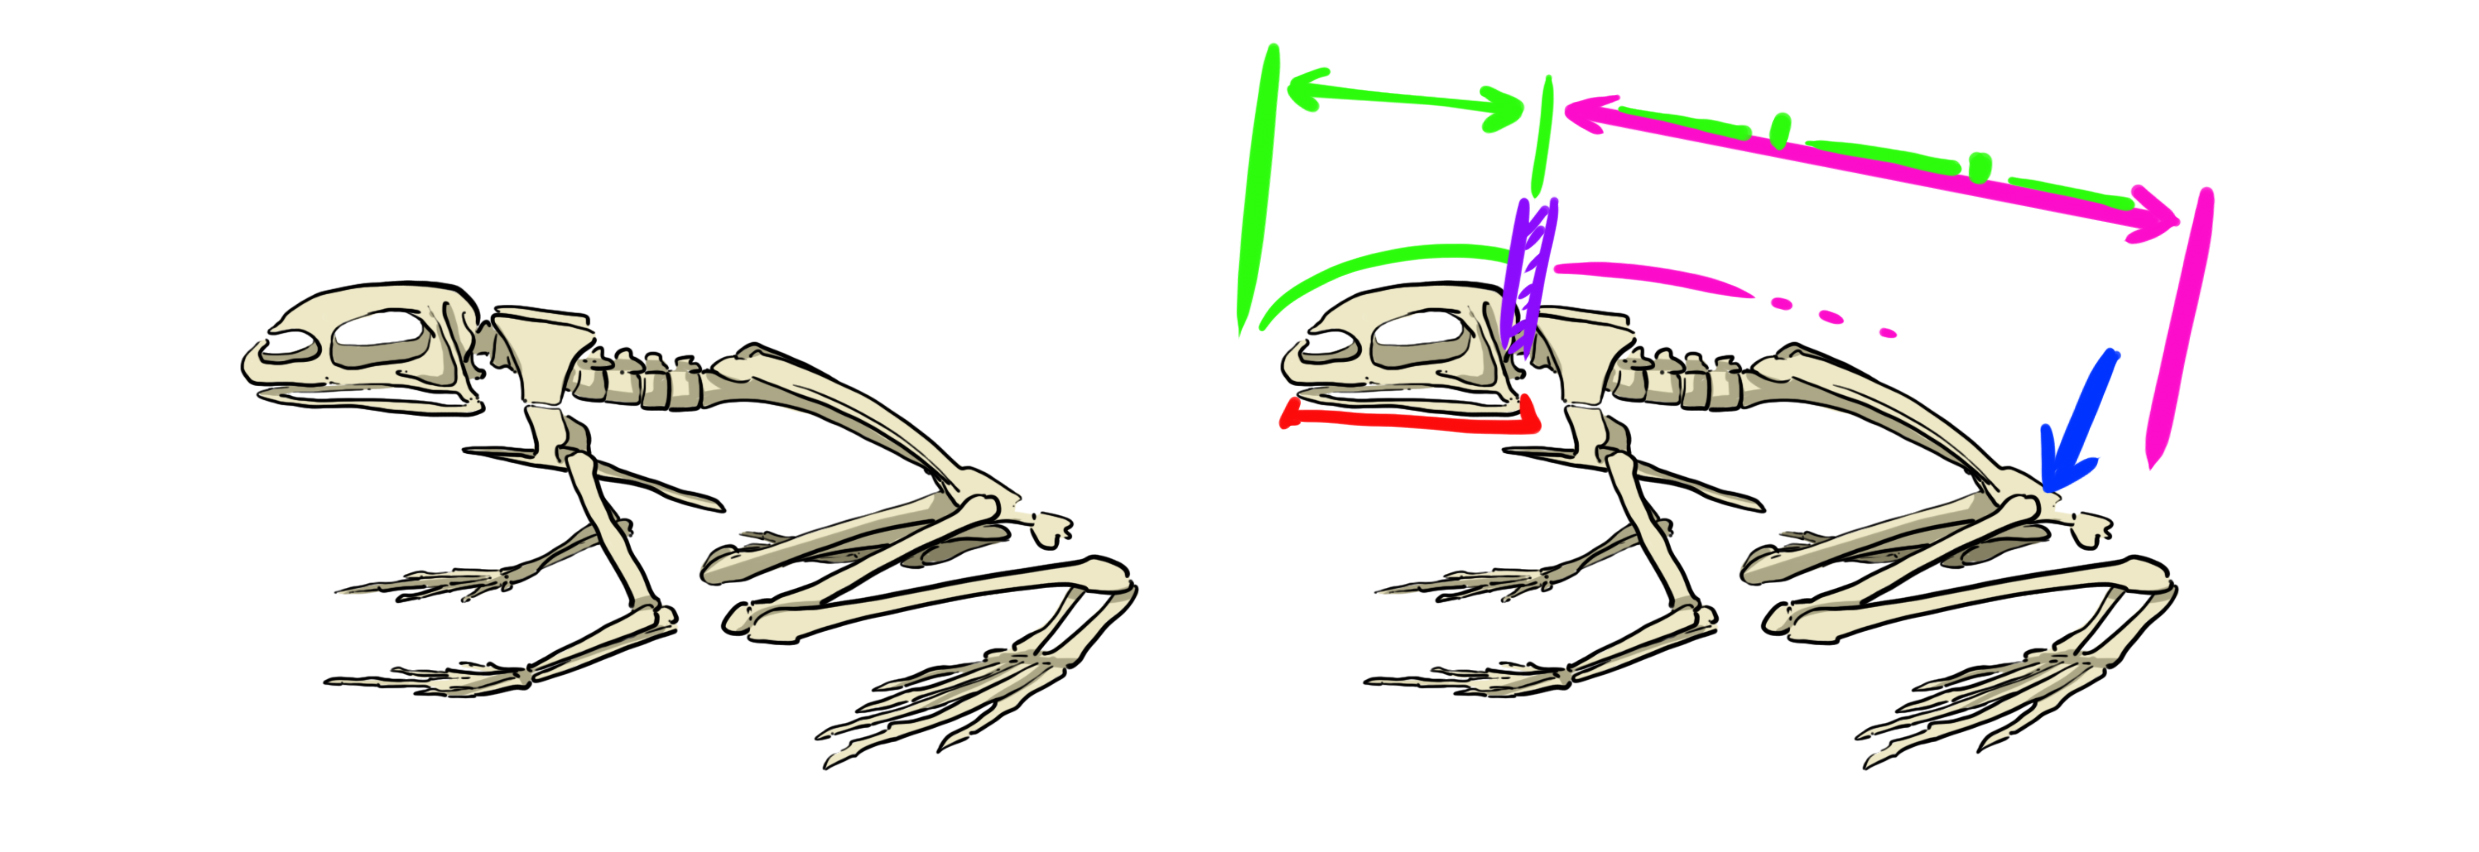 dessin schématique du squelette du crapaud vue de profil